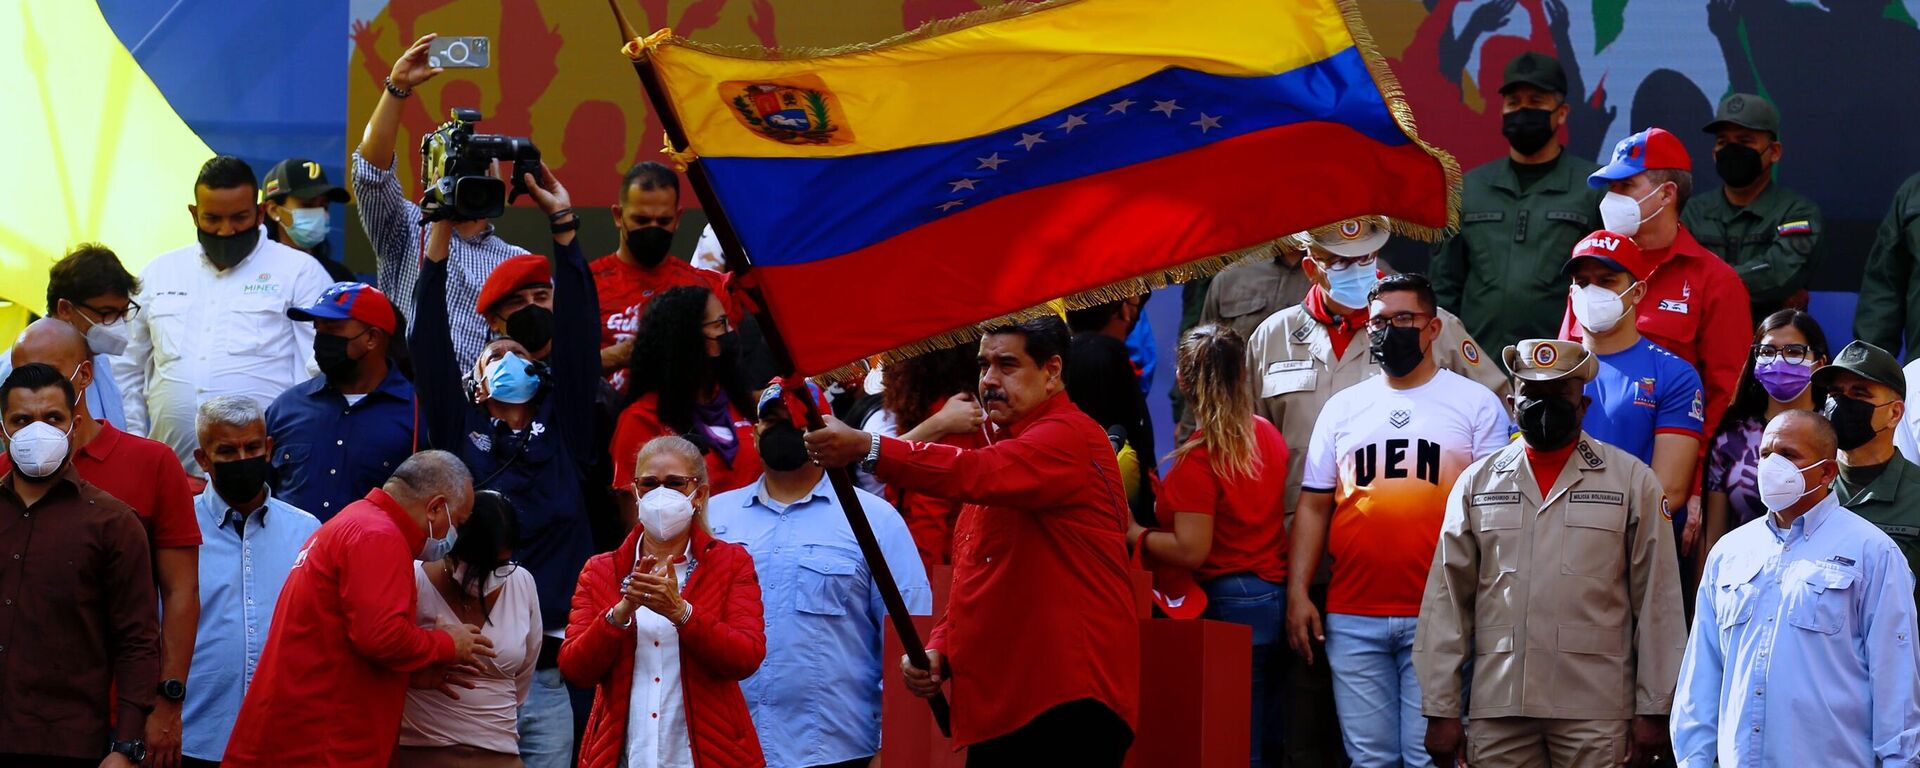 Nicolás Maduro, presidente de Venezuela, conmemoró la victoria sobre el golpe de Estado contra Hugo Chávez en 2002  - Sputnik Mundo, 1920, 26.05.2022